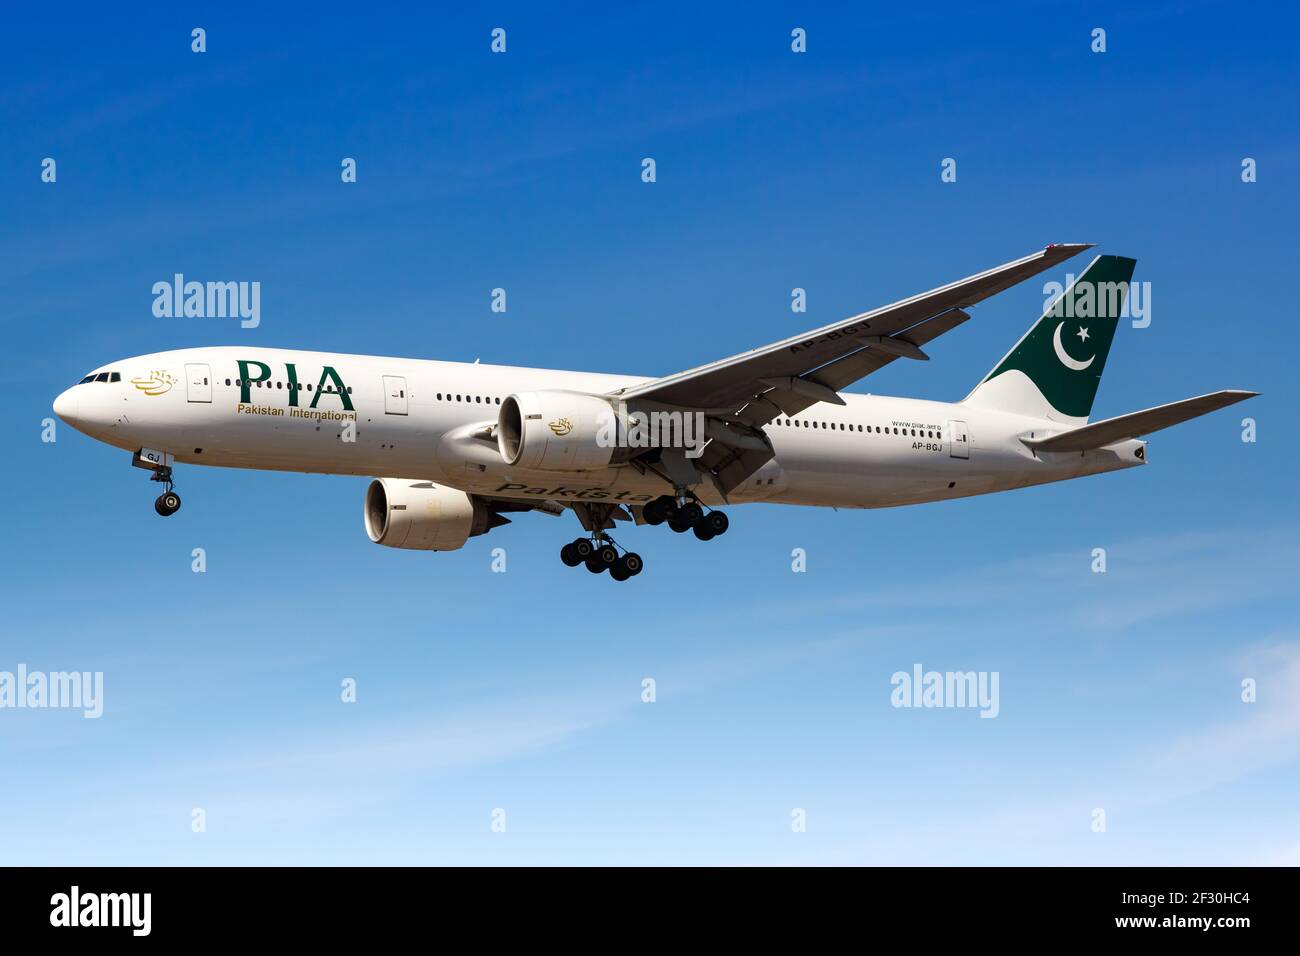 Londres, Royaume-Uni - 1er août 2018 : avion PIA Pakistan International Boeing 777 à l'aéroport de Londres Heathrow (LHR) au Royaume-Uni. Banque D'Images